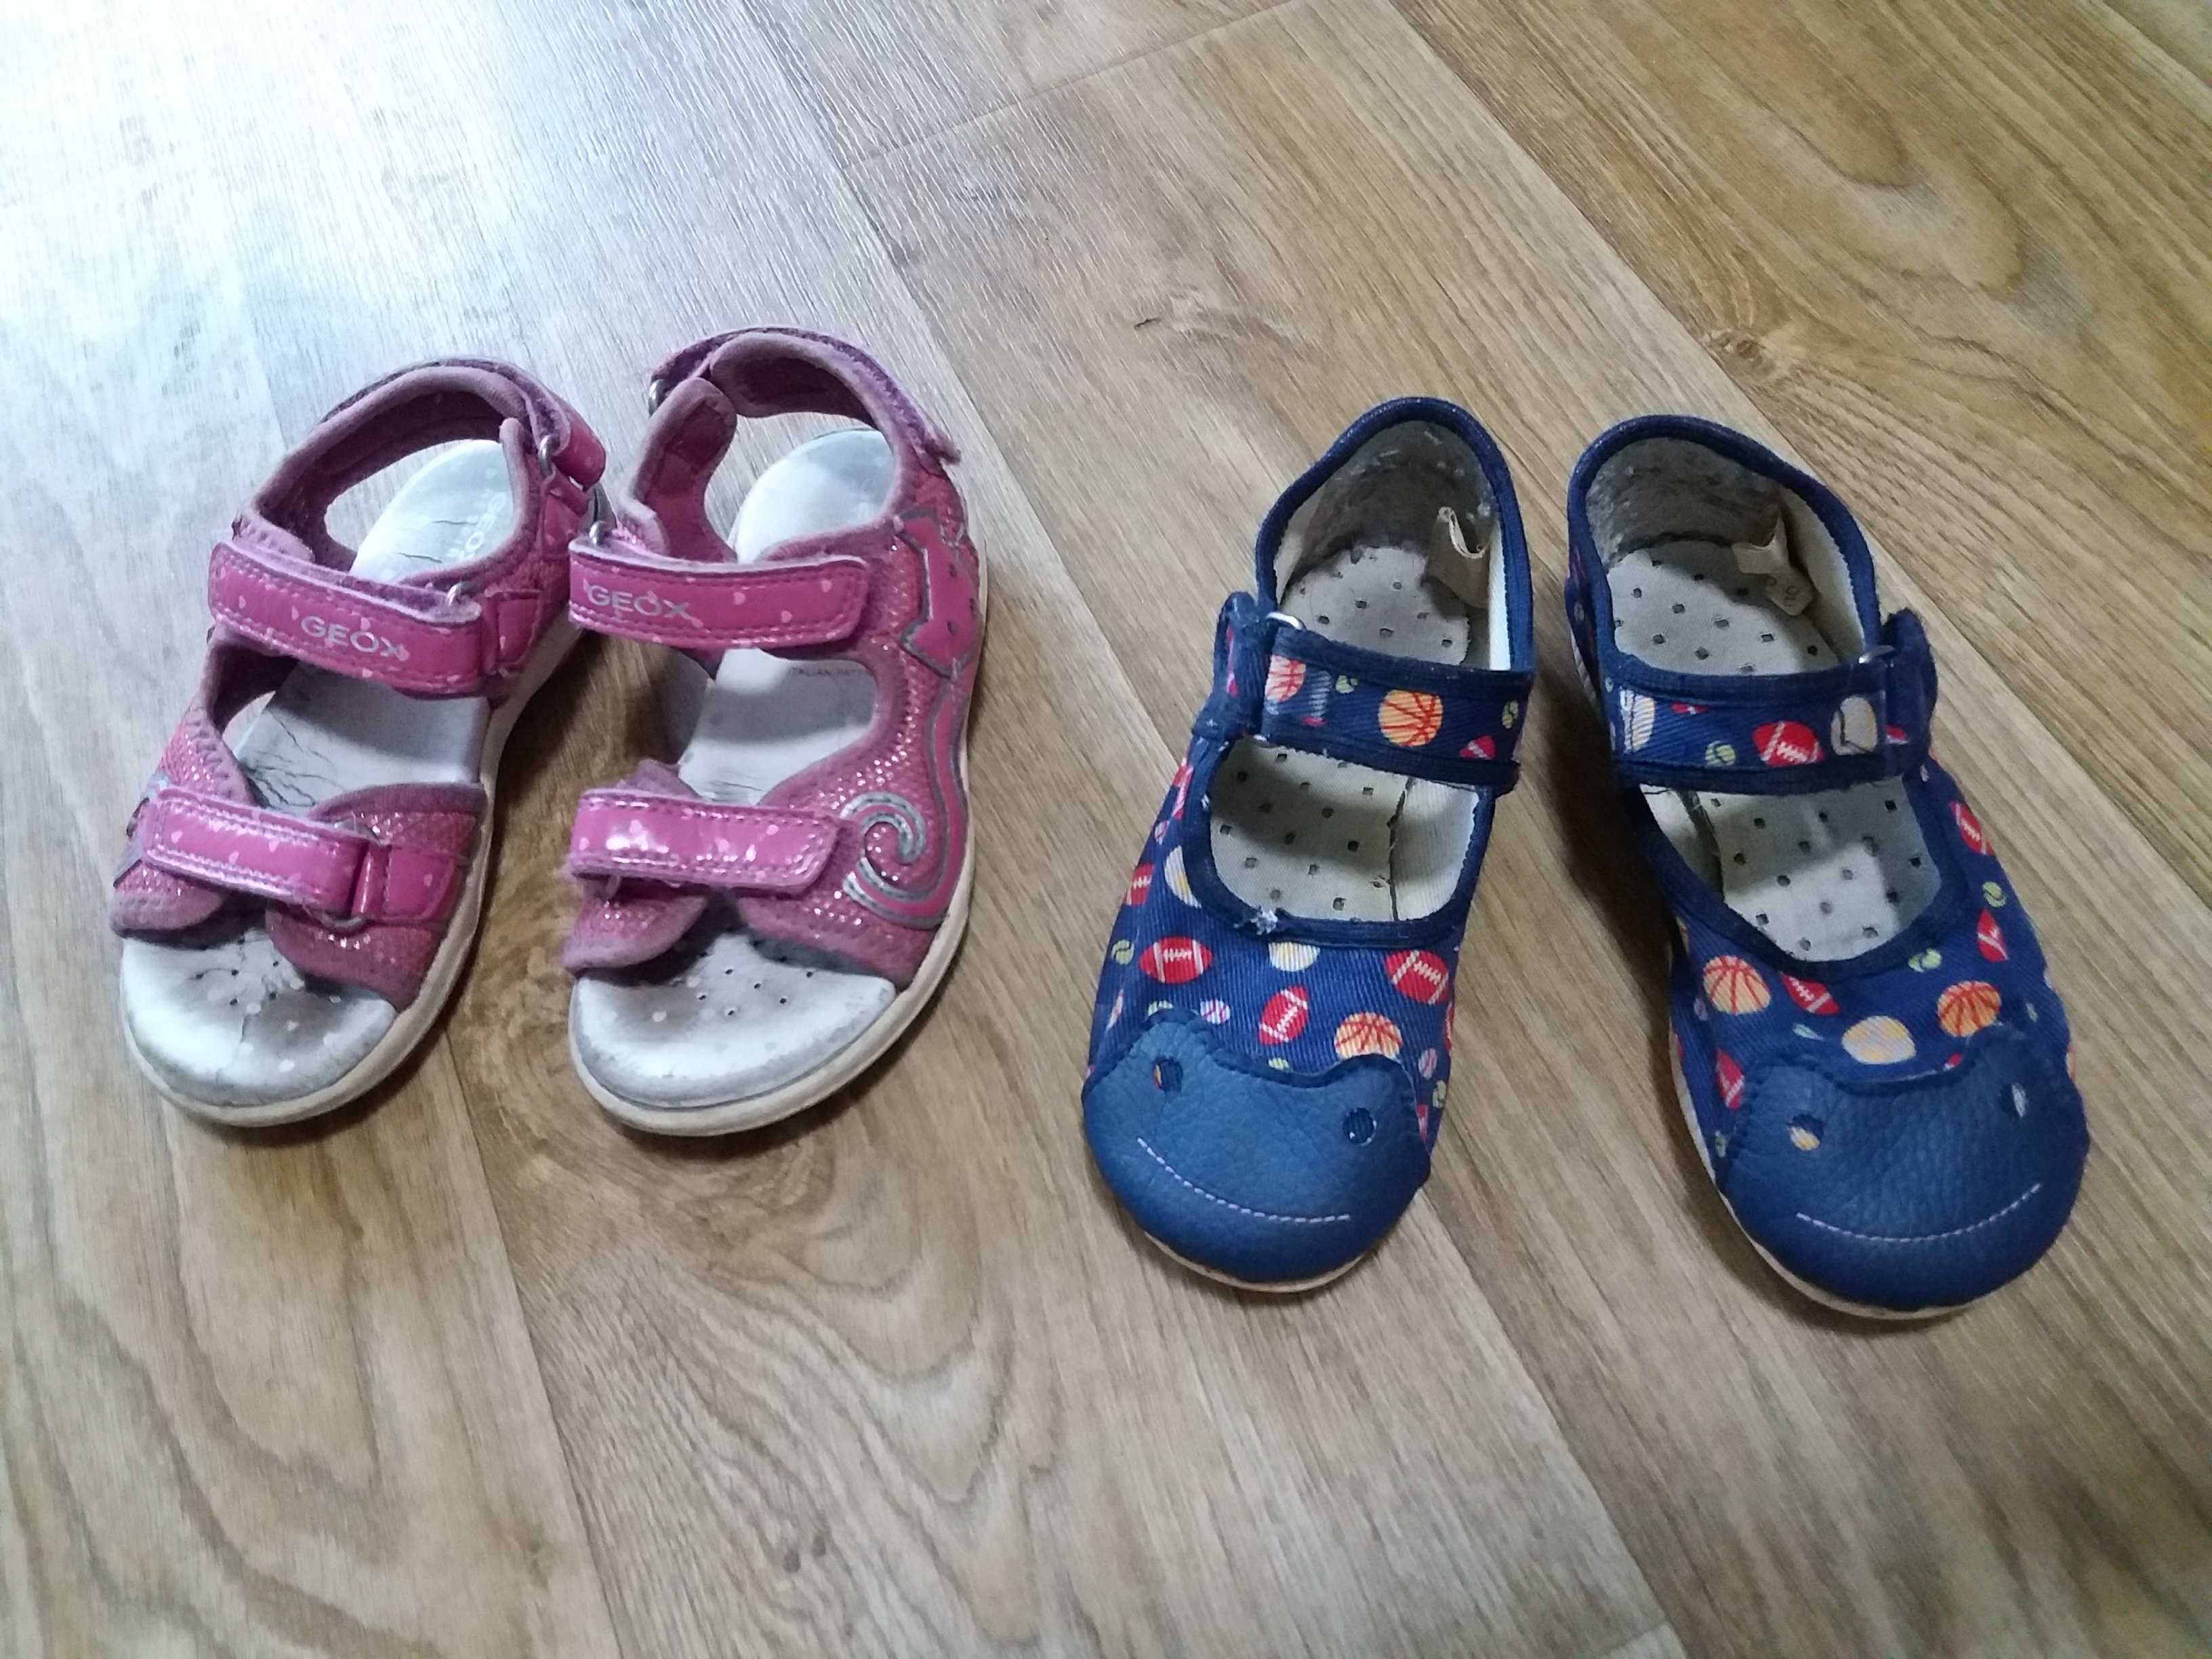 Обувь на девочку 26-27 размер, босоножки crocs, caпоги силик. мальчику